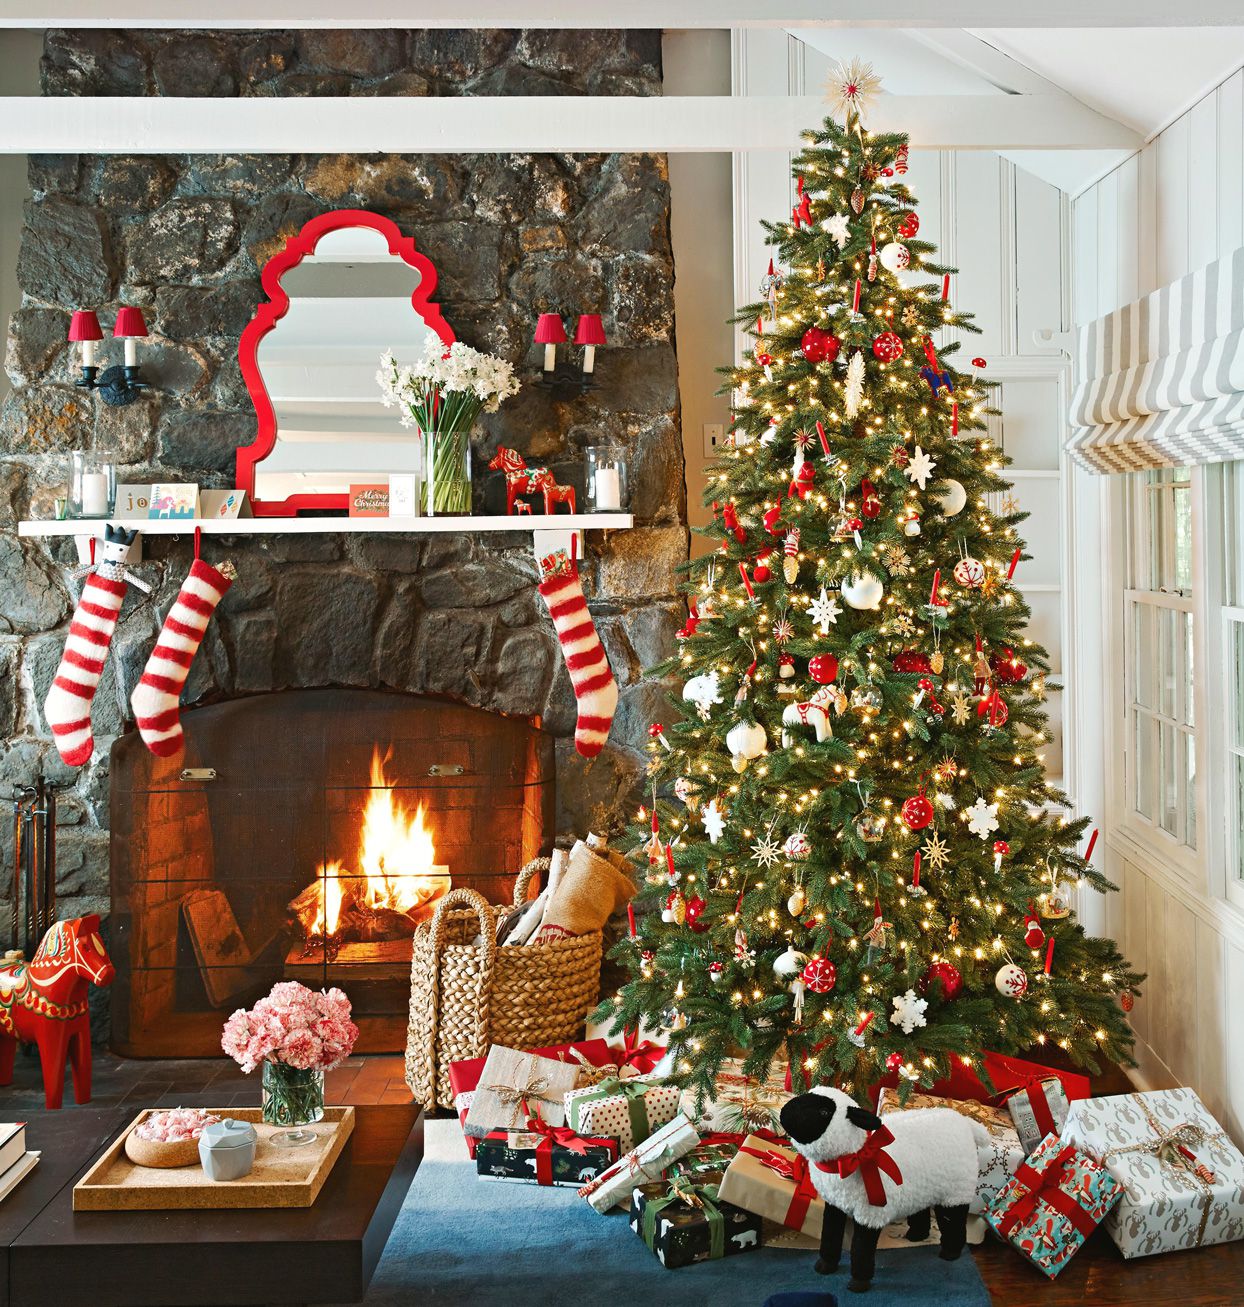 living-room-decorated-christmas-a977cc7d-169ccf20021546939bf4e702f26e9de1